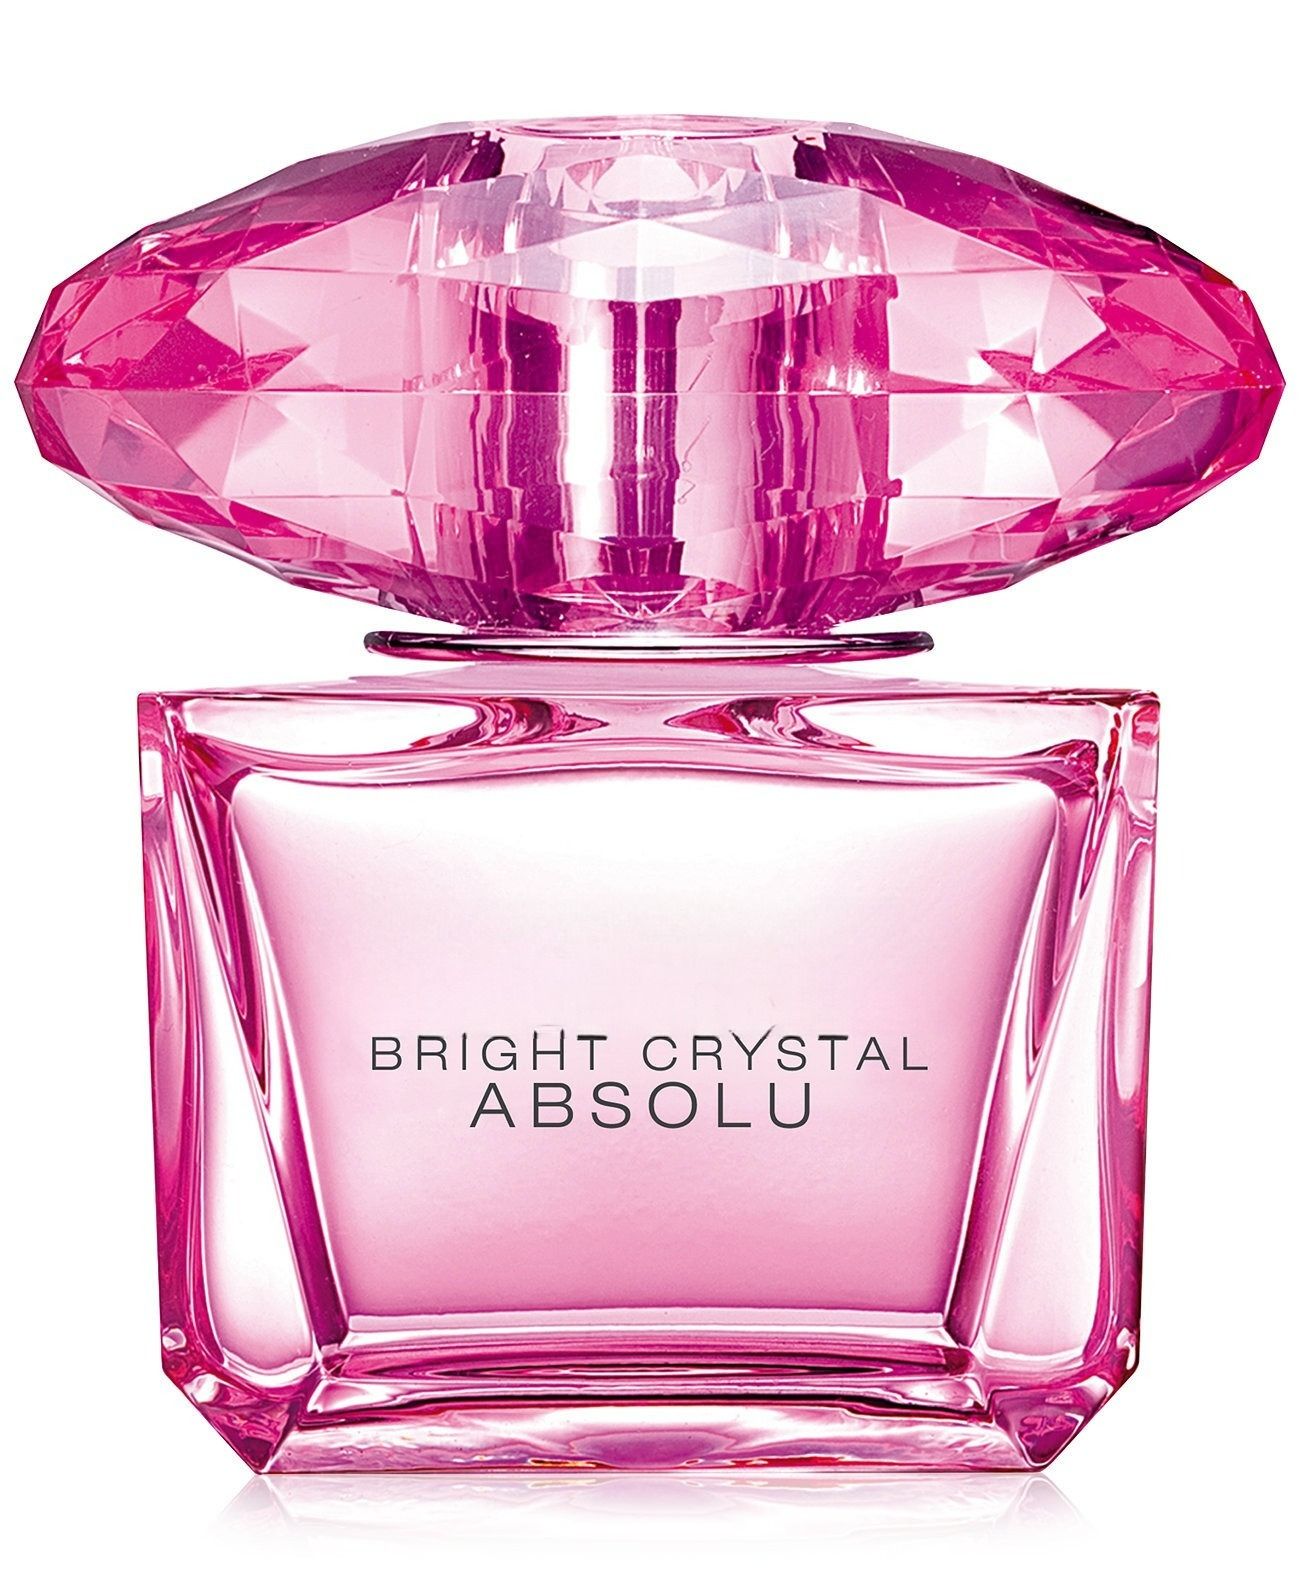 Versace Bright Crystal Absolu 90 ml